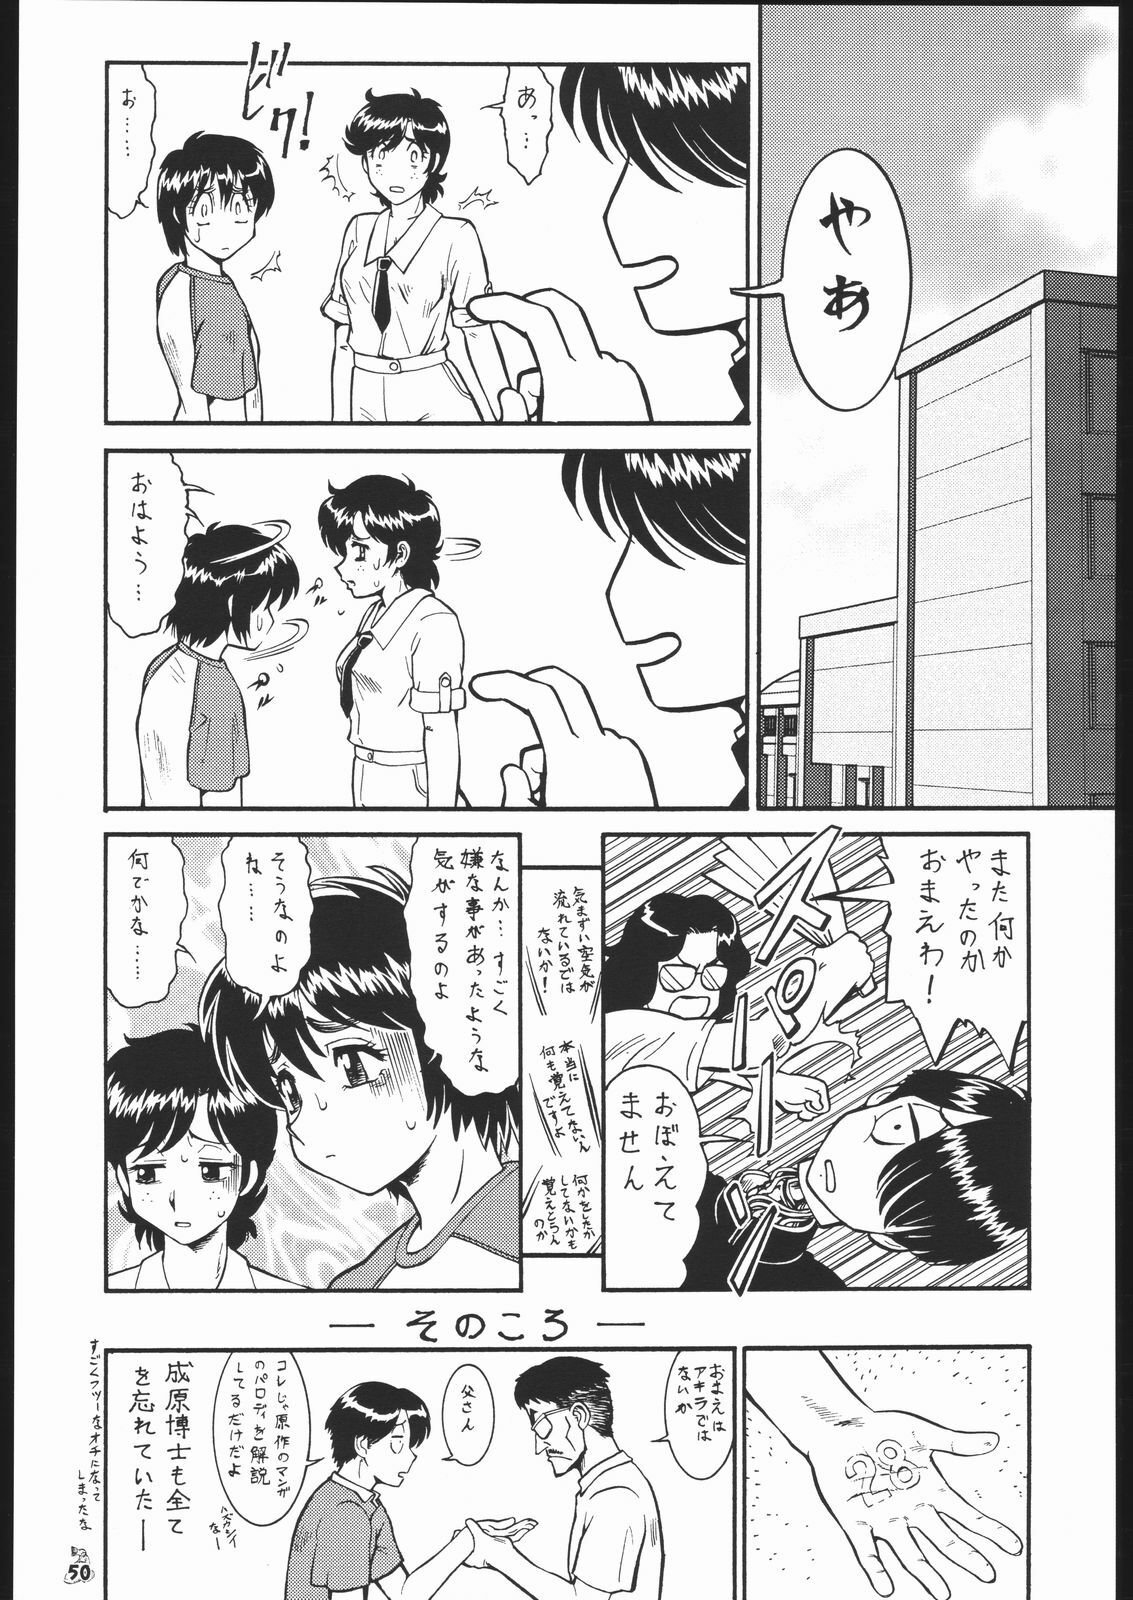 [Tsurikichi Doumei (Various)] Waga Seishun no Aru Natsukashii Daraku 2 (Various) page 49 full